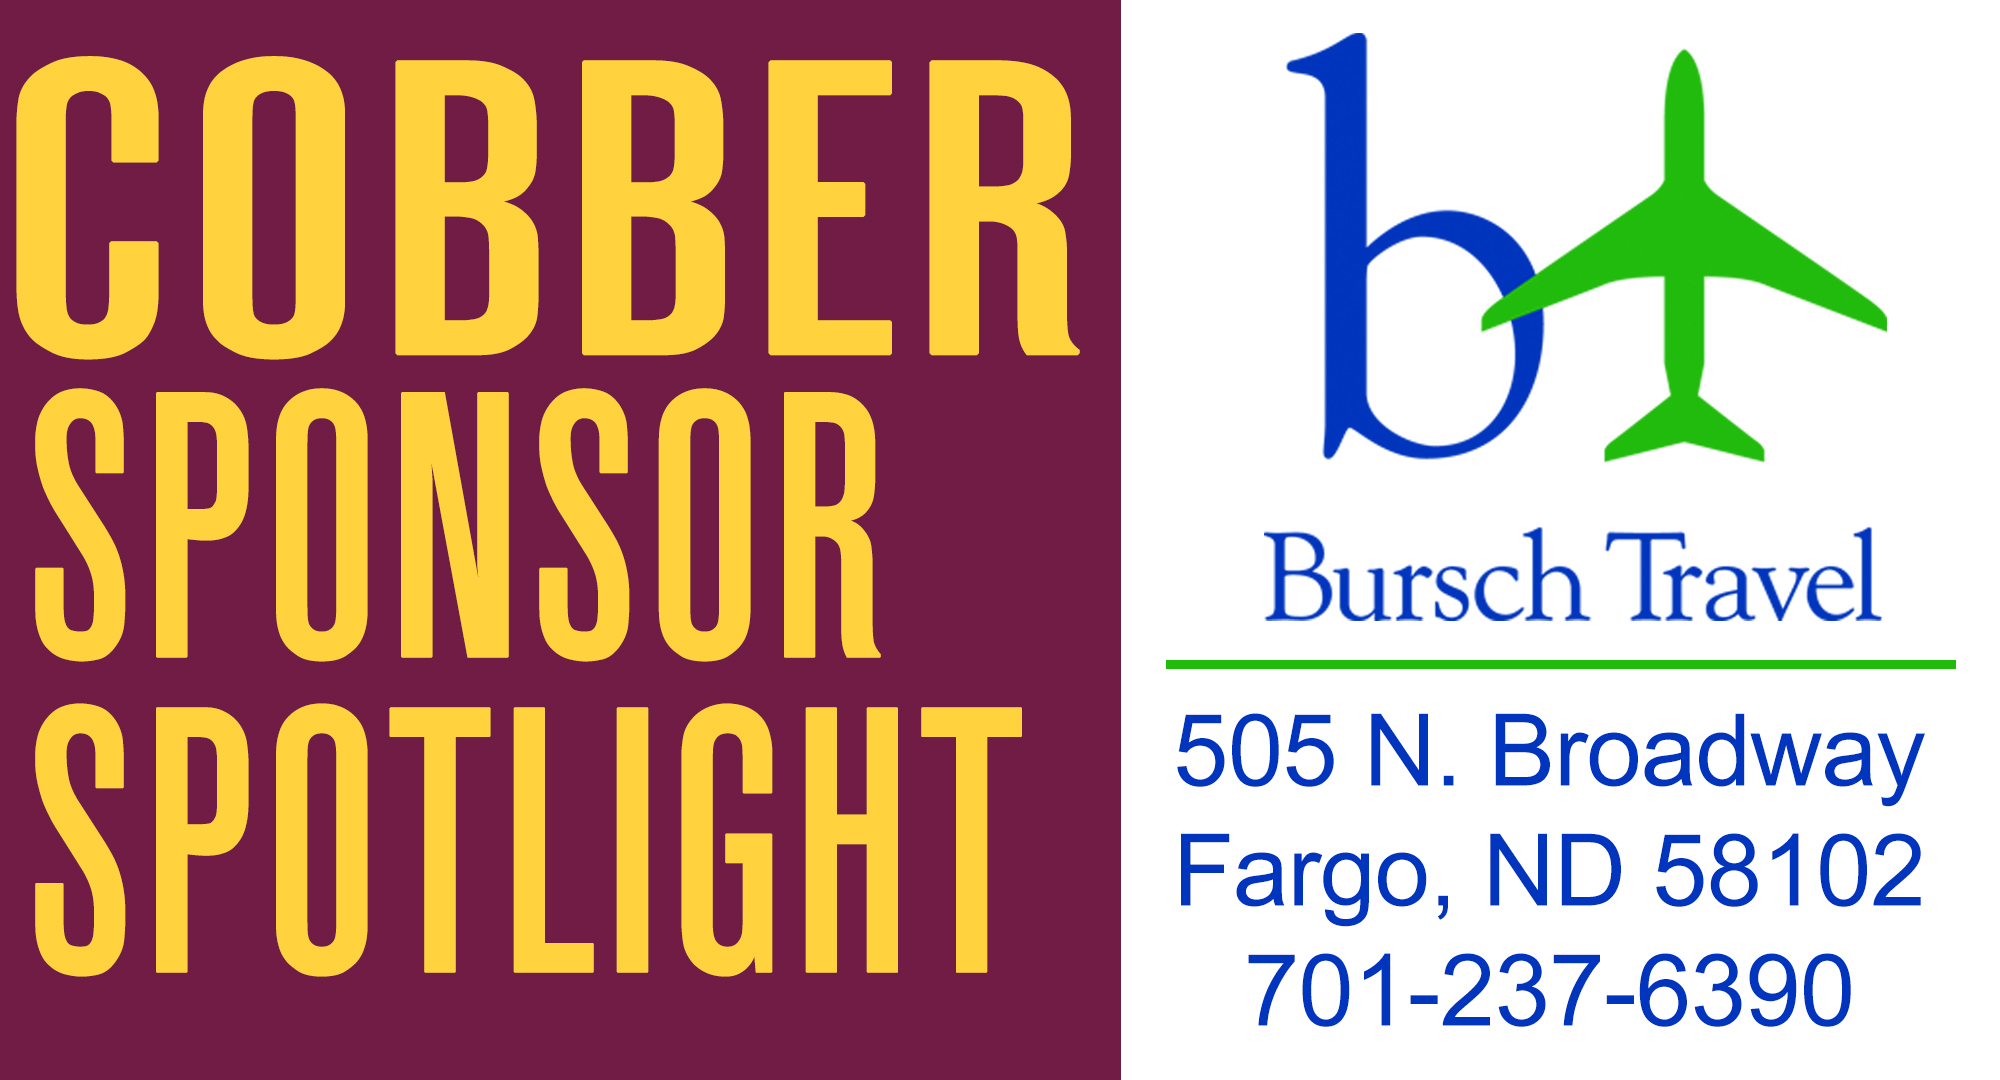 Cobber Sponsor Spotlight - Bursch Travel